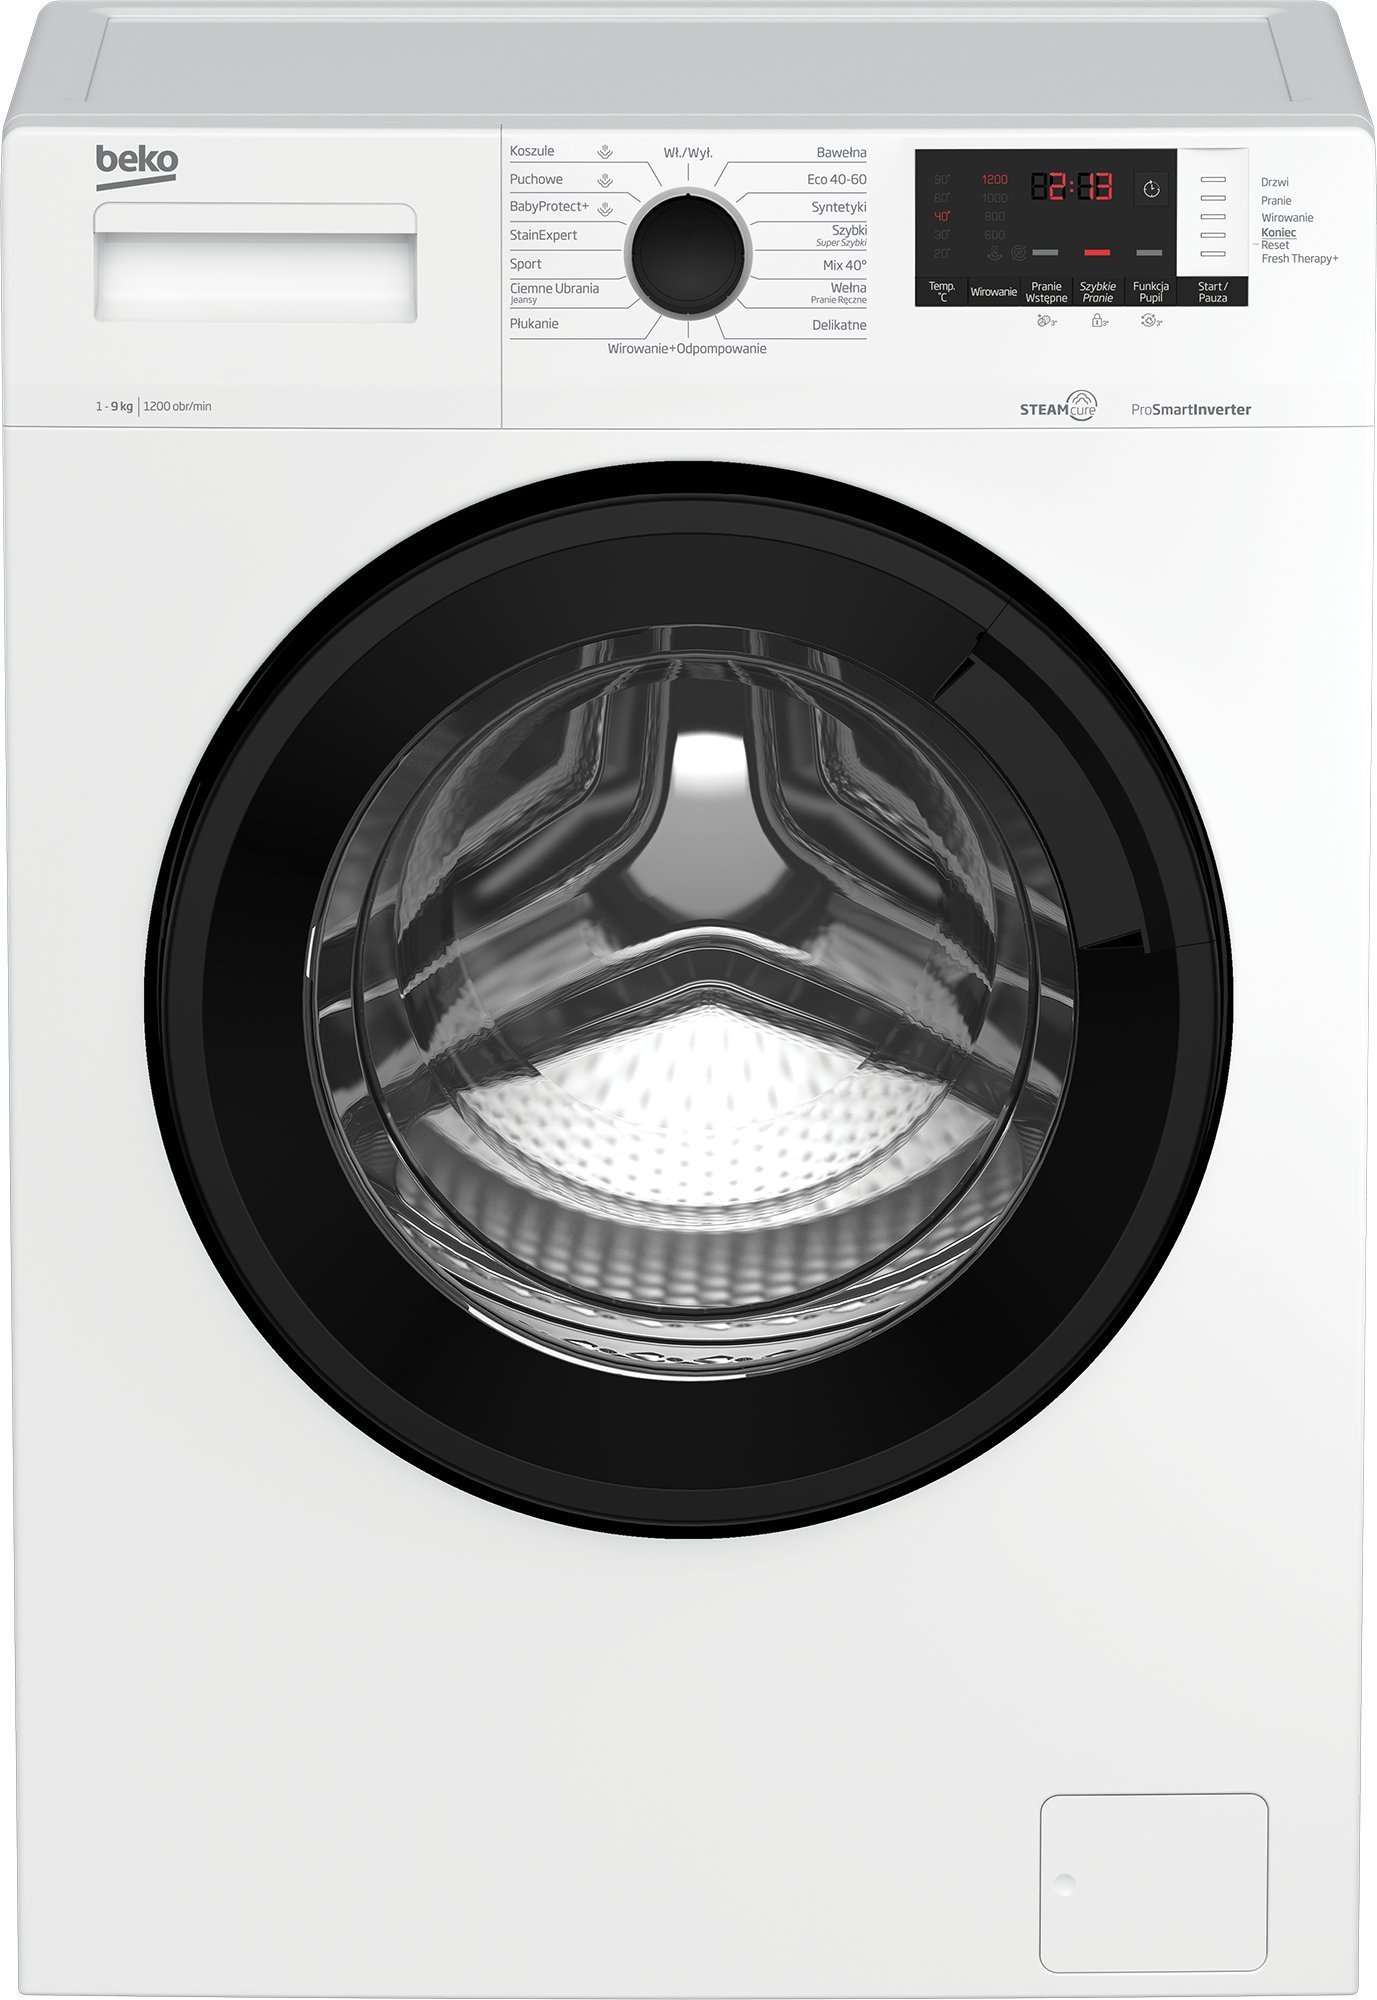 Masini de spalat rufe - Mașină de spălat rufe Beko WUV9612WPBSE,
alb,
9 kg,
Cu functie de abur